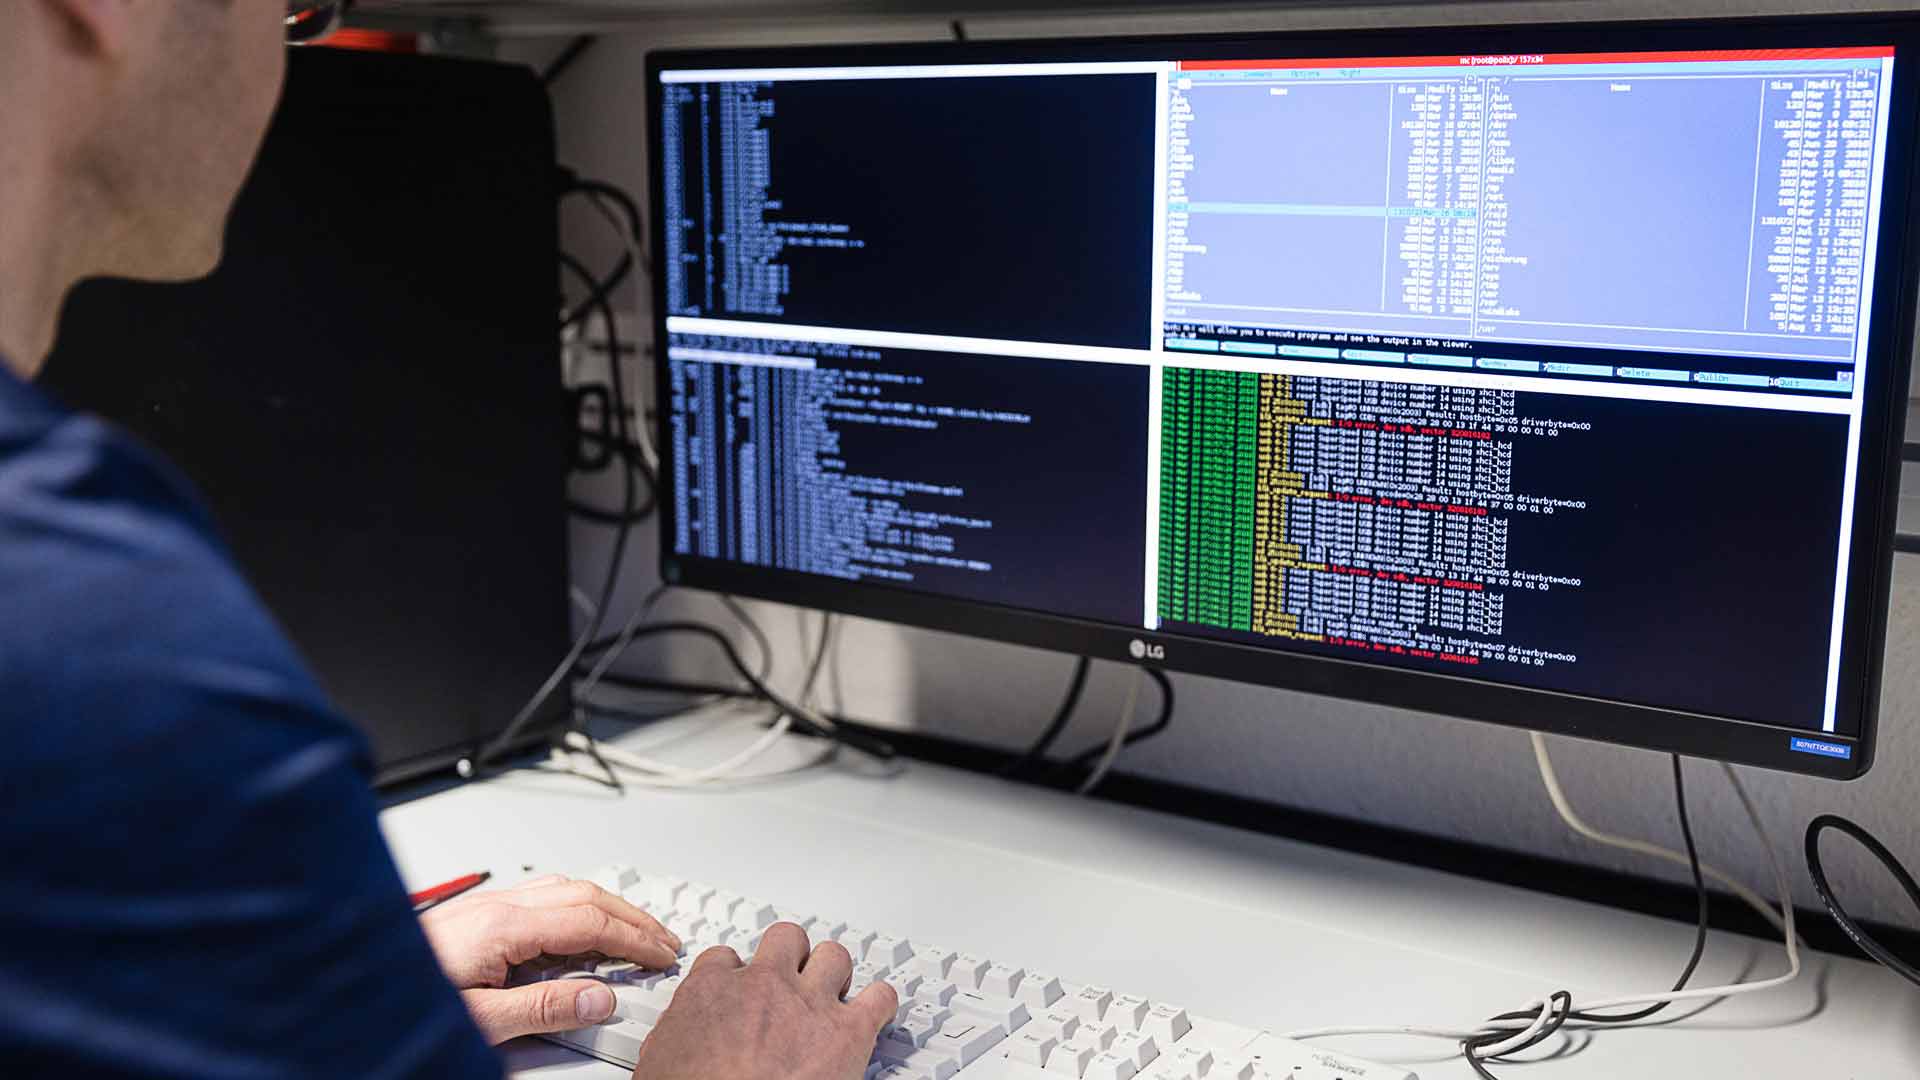 Ein Mann sitzt vor einem Computerbildschirm, auf dem mehrere Reihen mit Codes zu sehen sind.